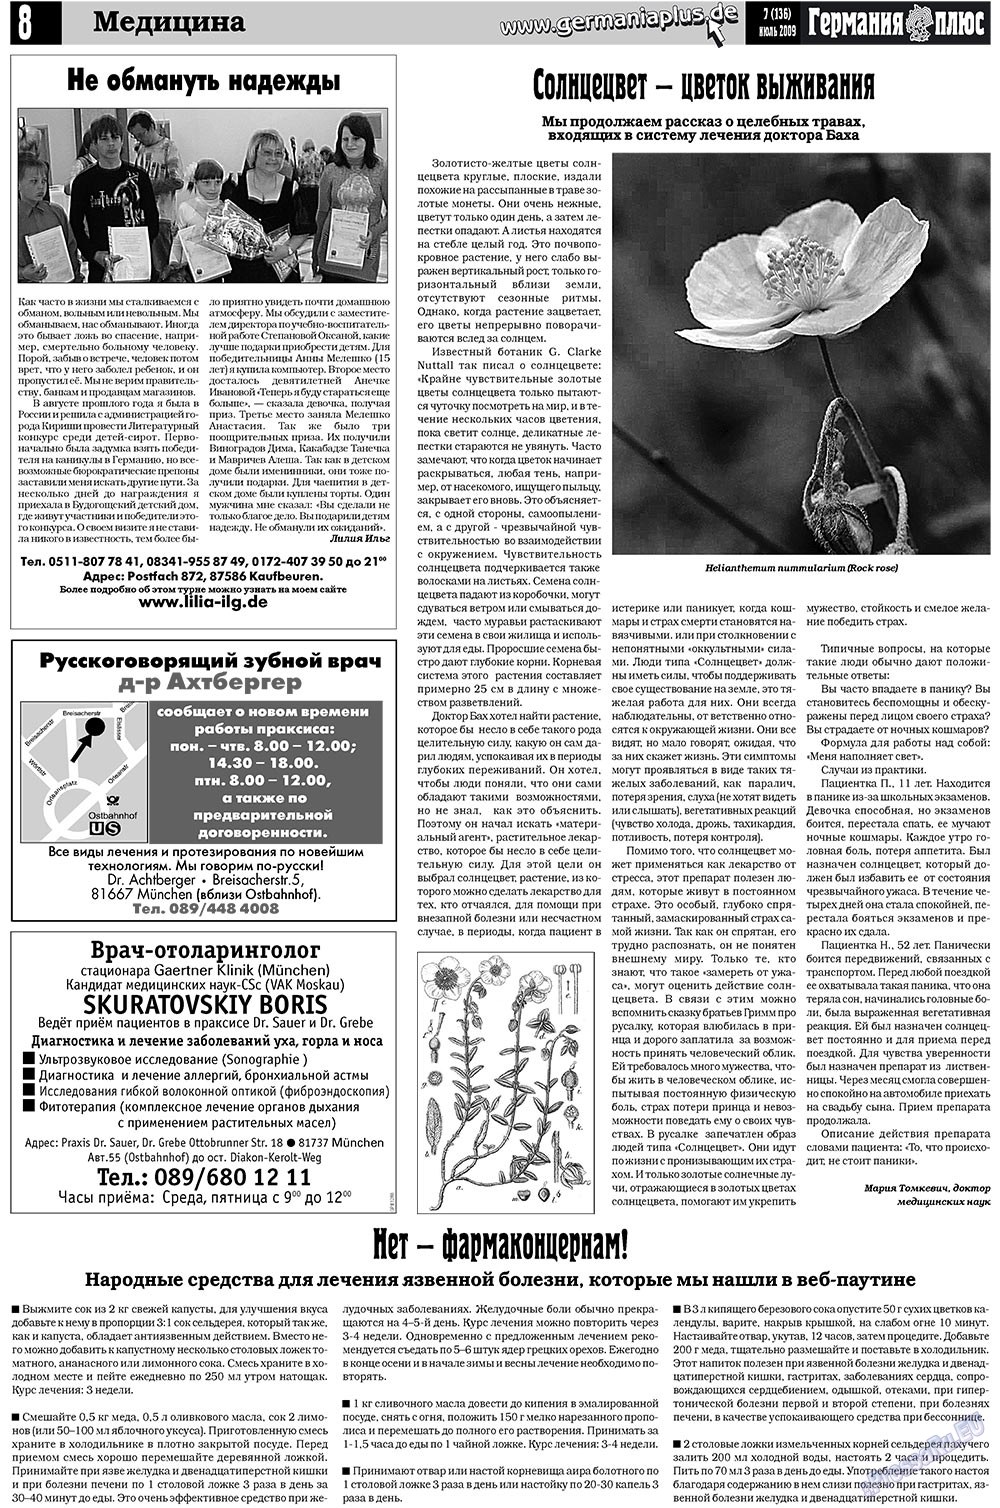 Германия плюс (газета). 2009 год, номер 7, стр. 12